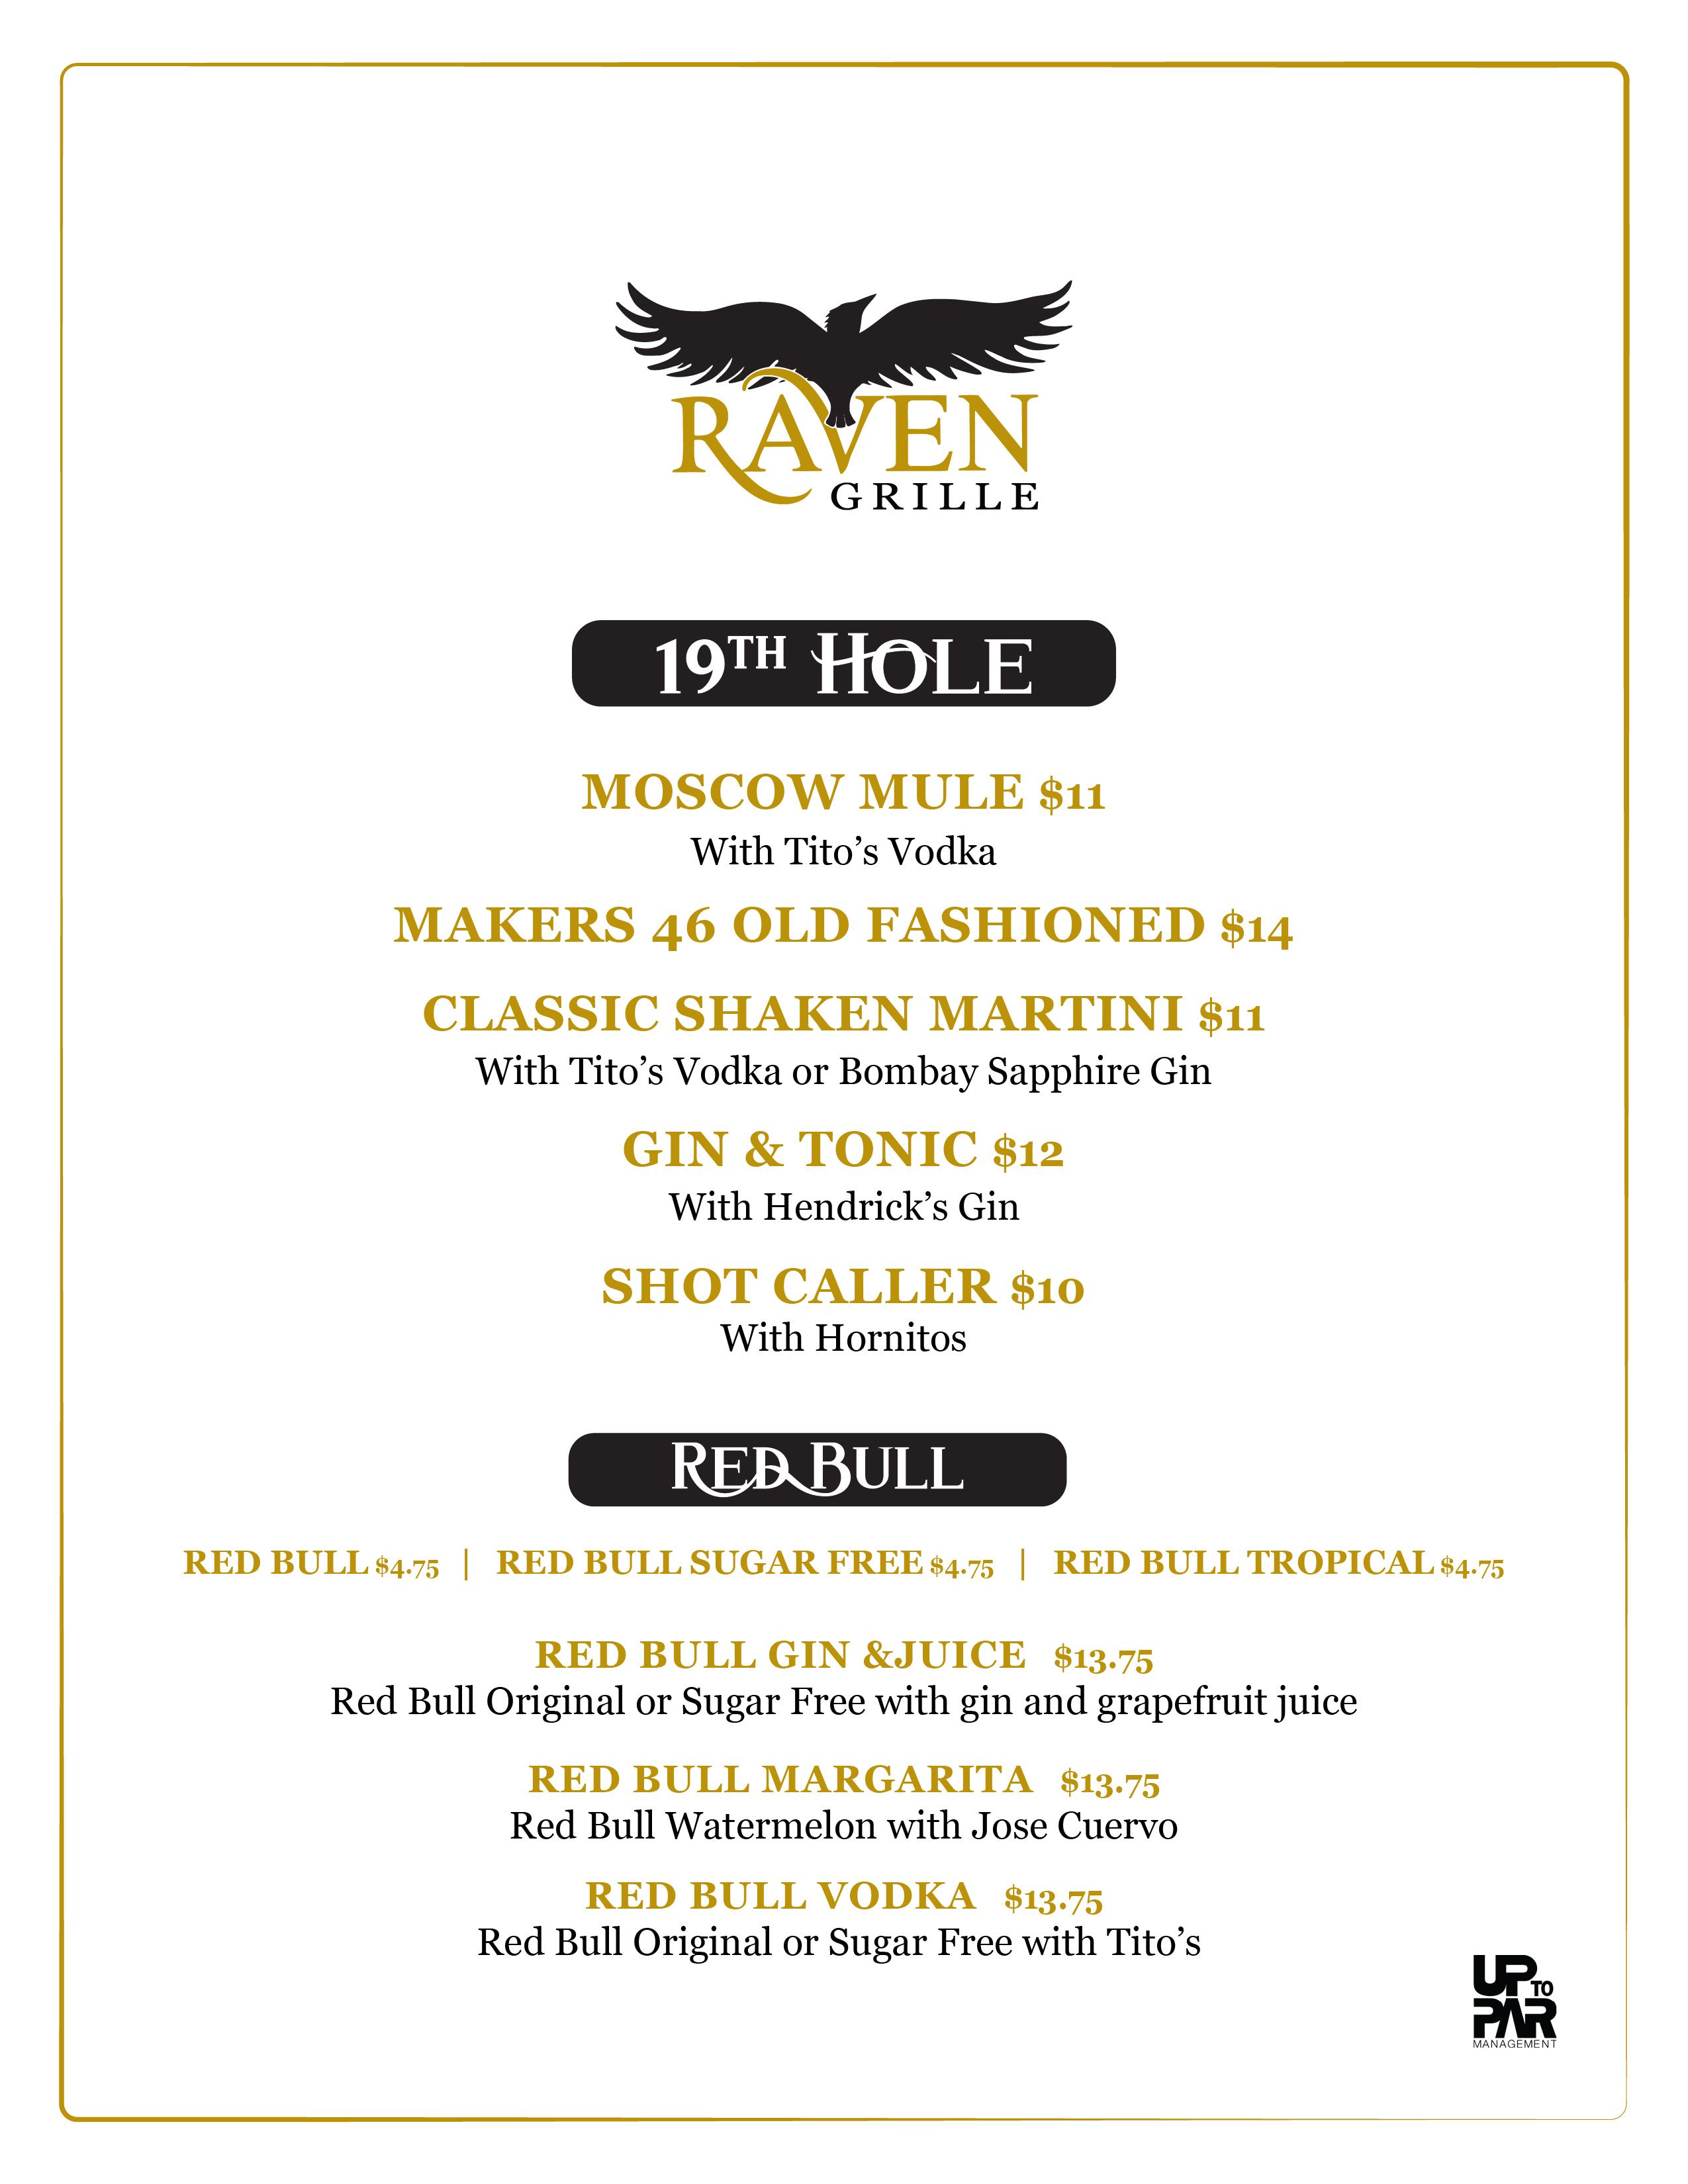 Raven Grille menu at Snowshoe Mountain Resort